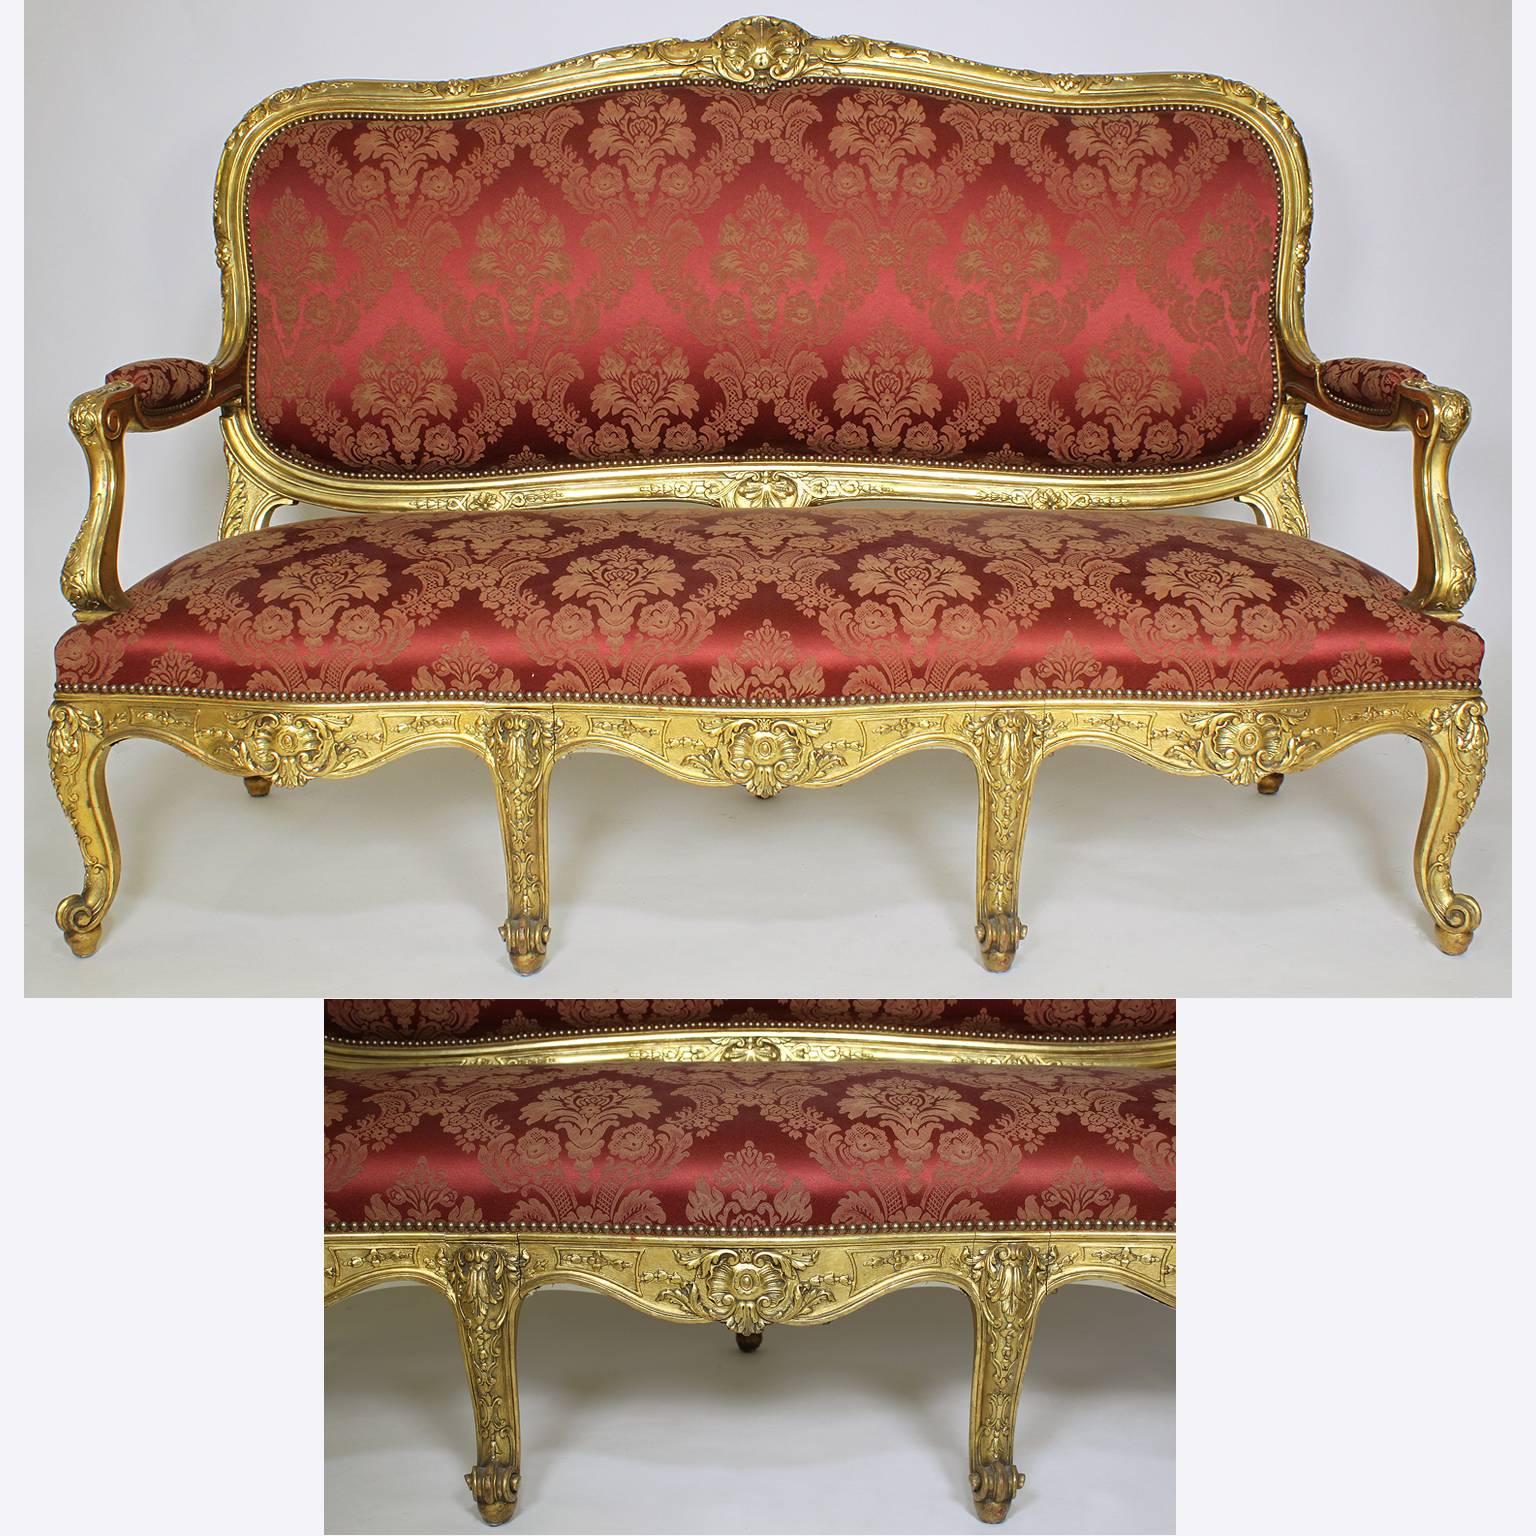 Feine französische Salongarnitur im Louis XV-Stil aus vergoldetem Holz des 19. Jahrhunderts, bestehend aus einem Canapé (Sofa) und zwei Fauteuils à la Reine (Sesseln), alle kürzlich neu gepolstert und mit Originalvergoldung, Paris, um 1890.

Maße: